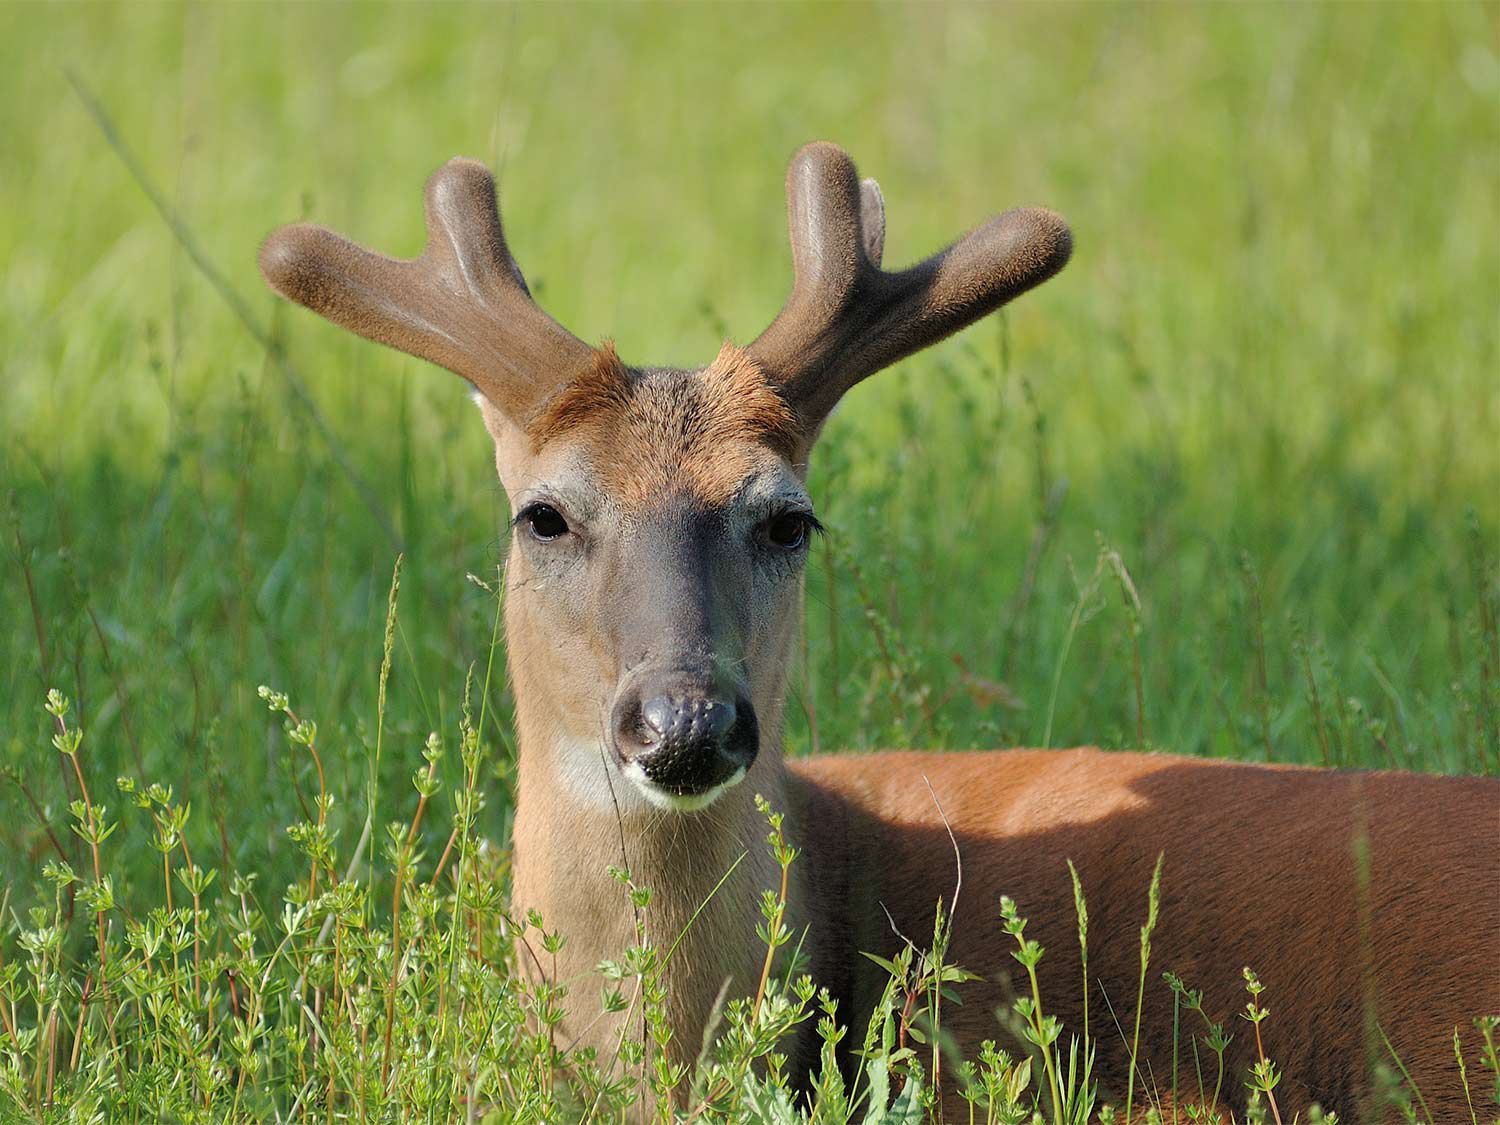 Mule deer's antlers unlike any other